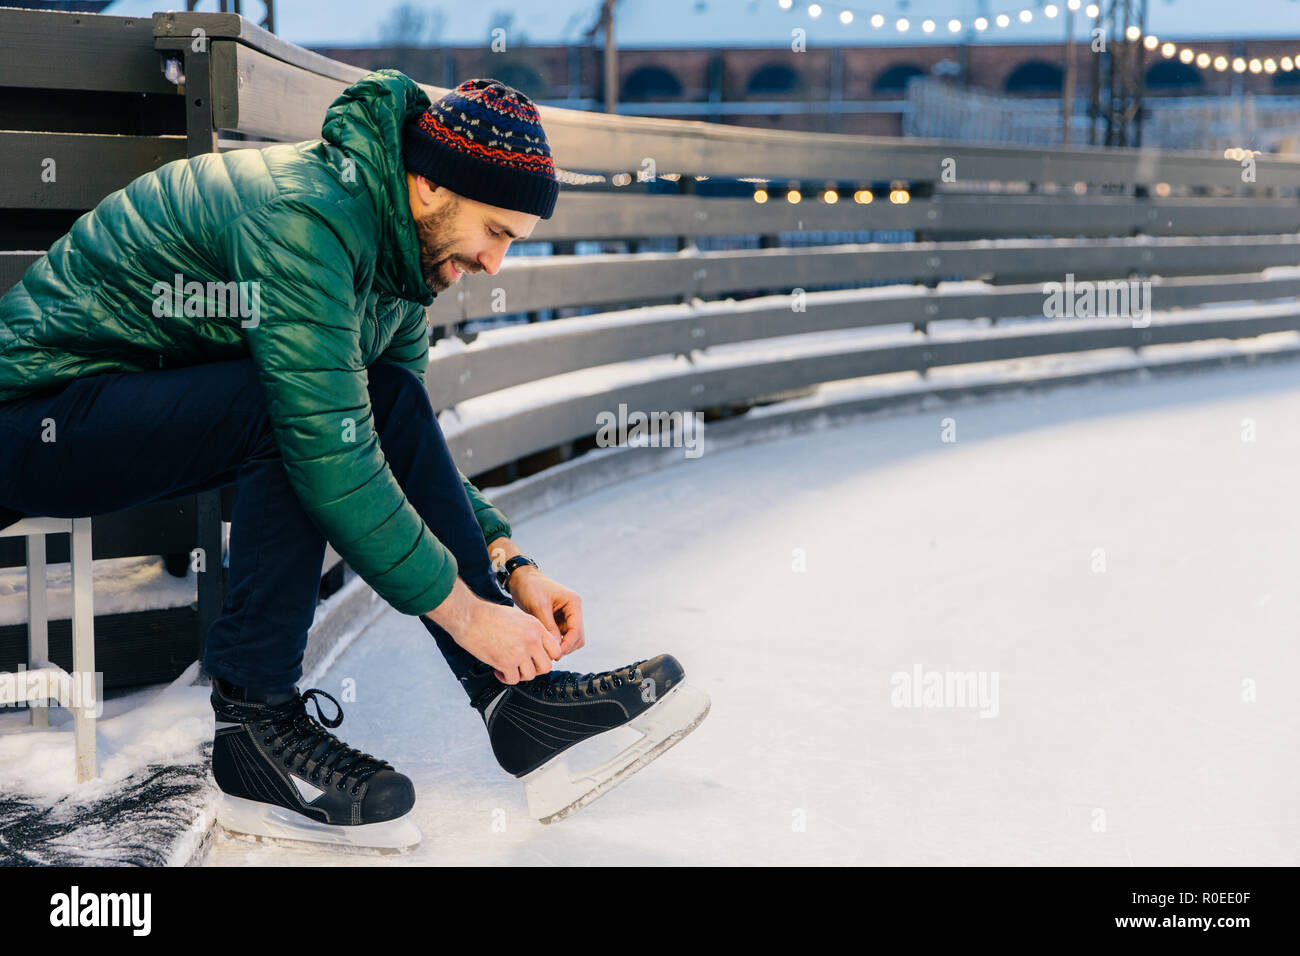 Les gens, sport d'hiver, loisirs concept. Ravissant sourire homme chausse ses patins, aller à l'anneau de glace sur la pratique, être en bonne humeur, aime l'hiver et g Banque D'Images